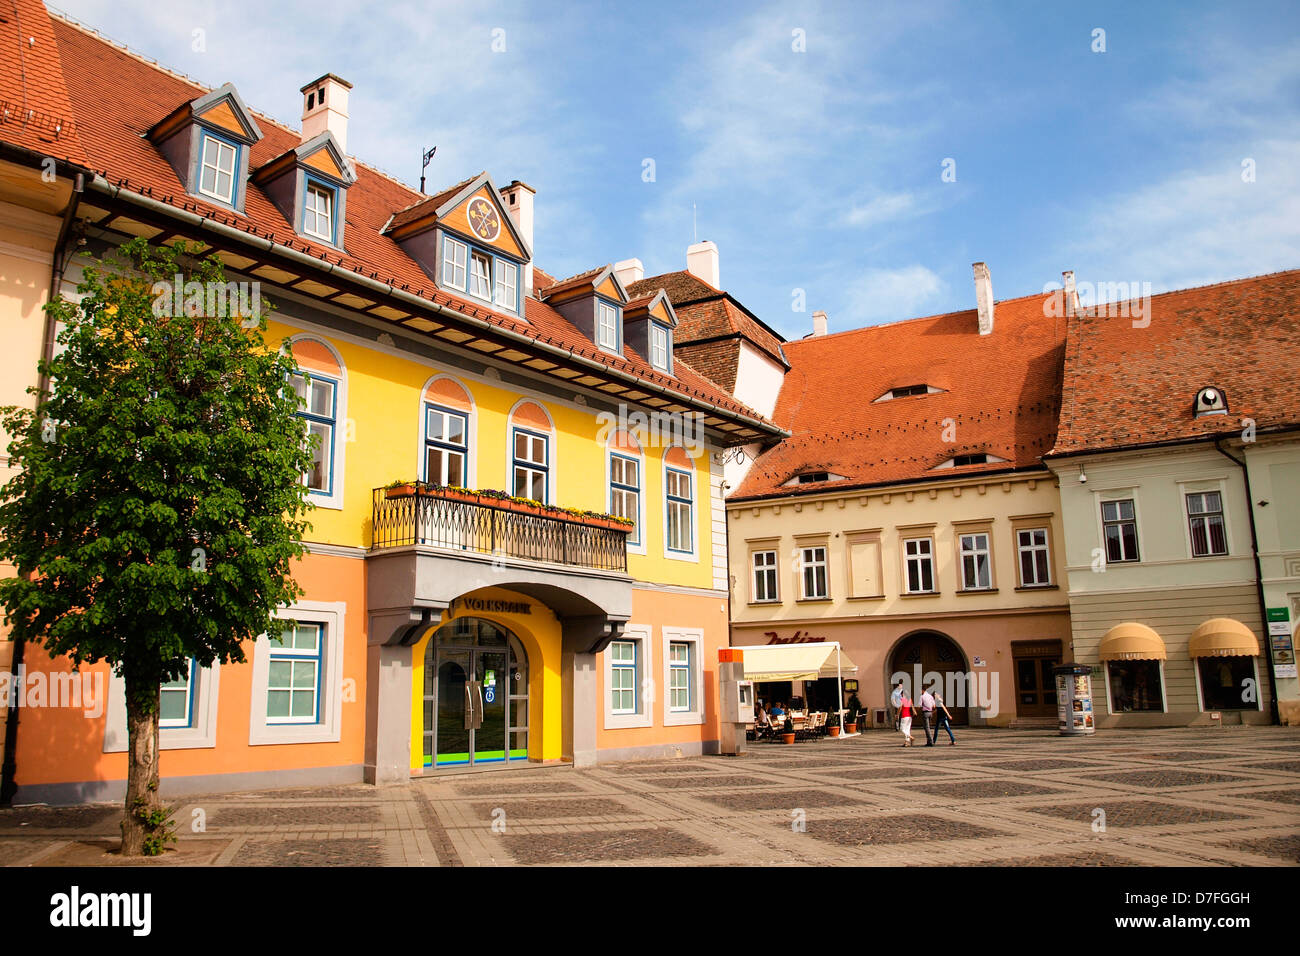 Sibiu, Central Square, das deutsche Forum Gebäude, mit dem Wappen. Mittelalterliche Architektur Europas. Stockfoto